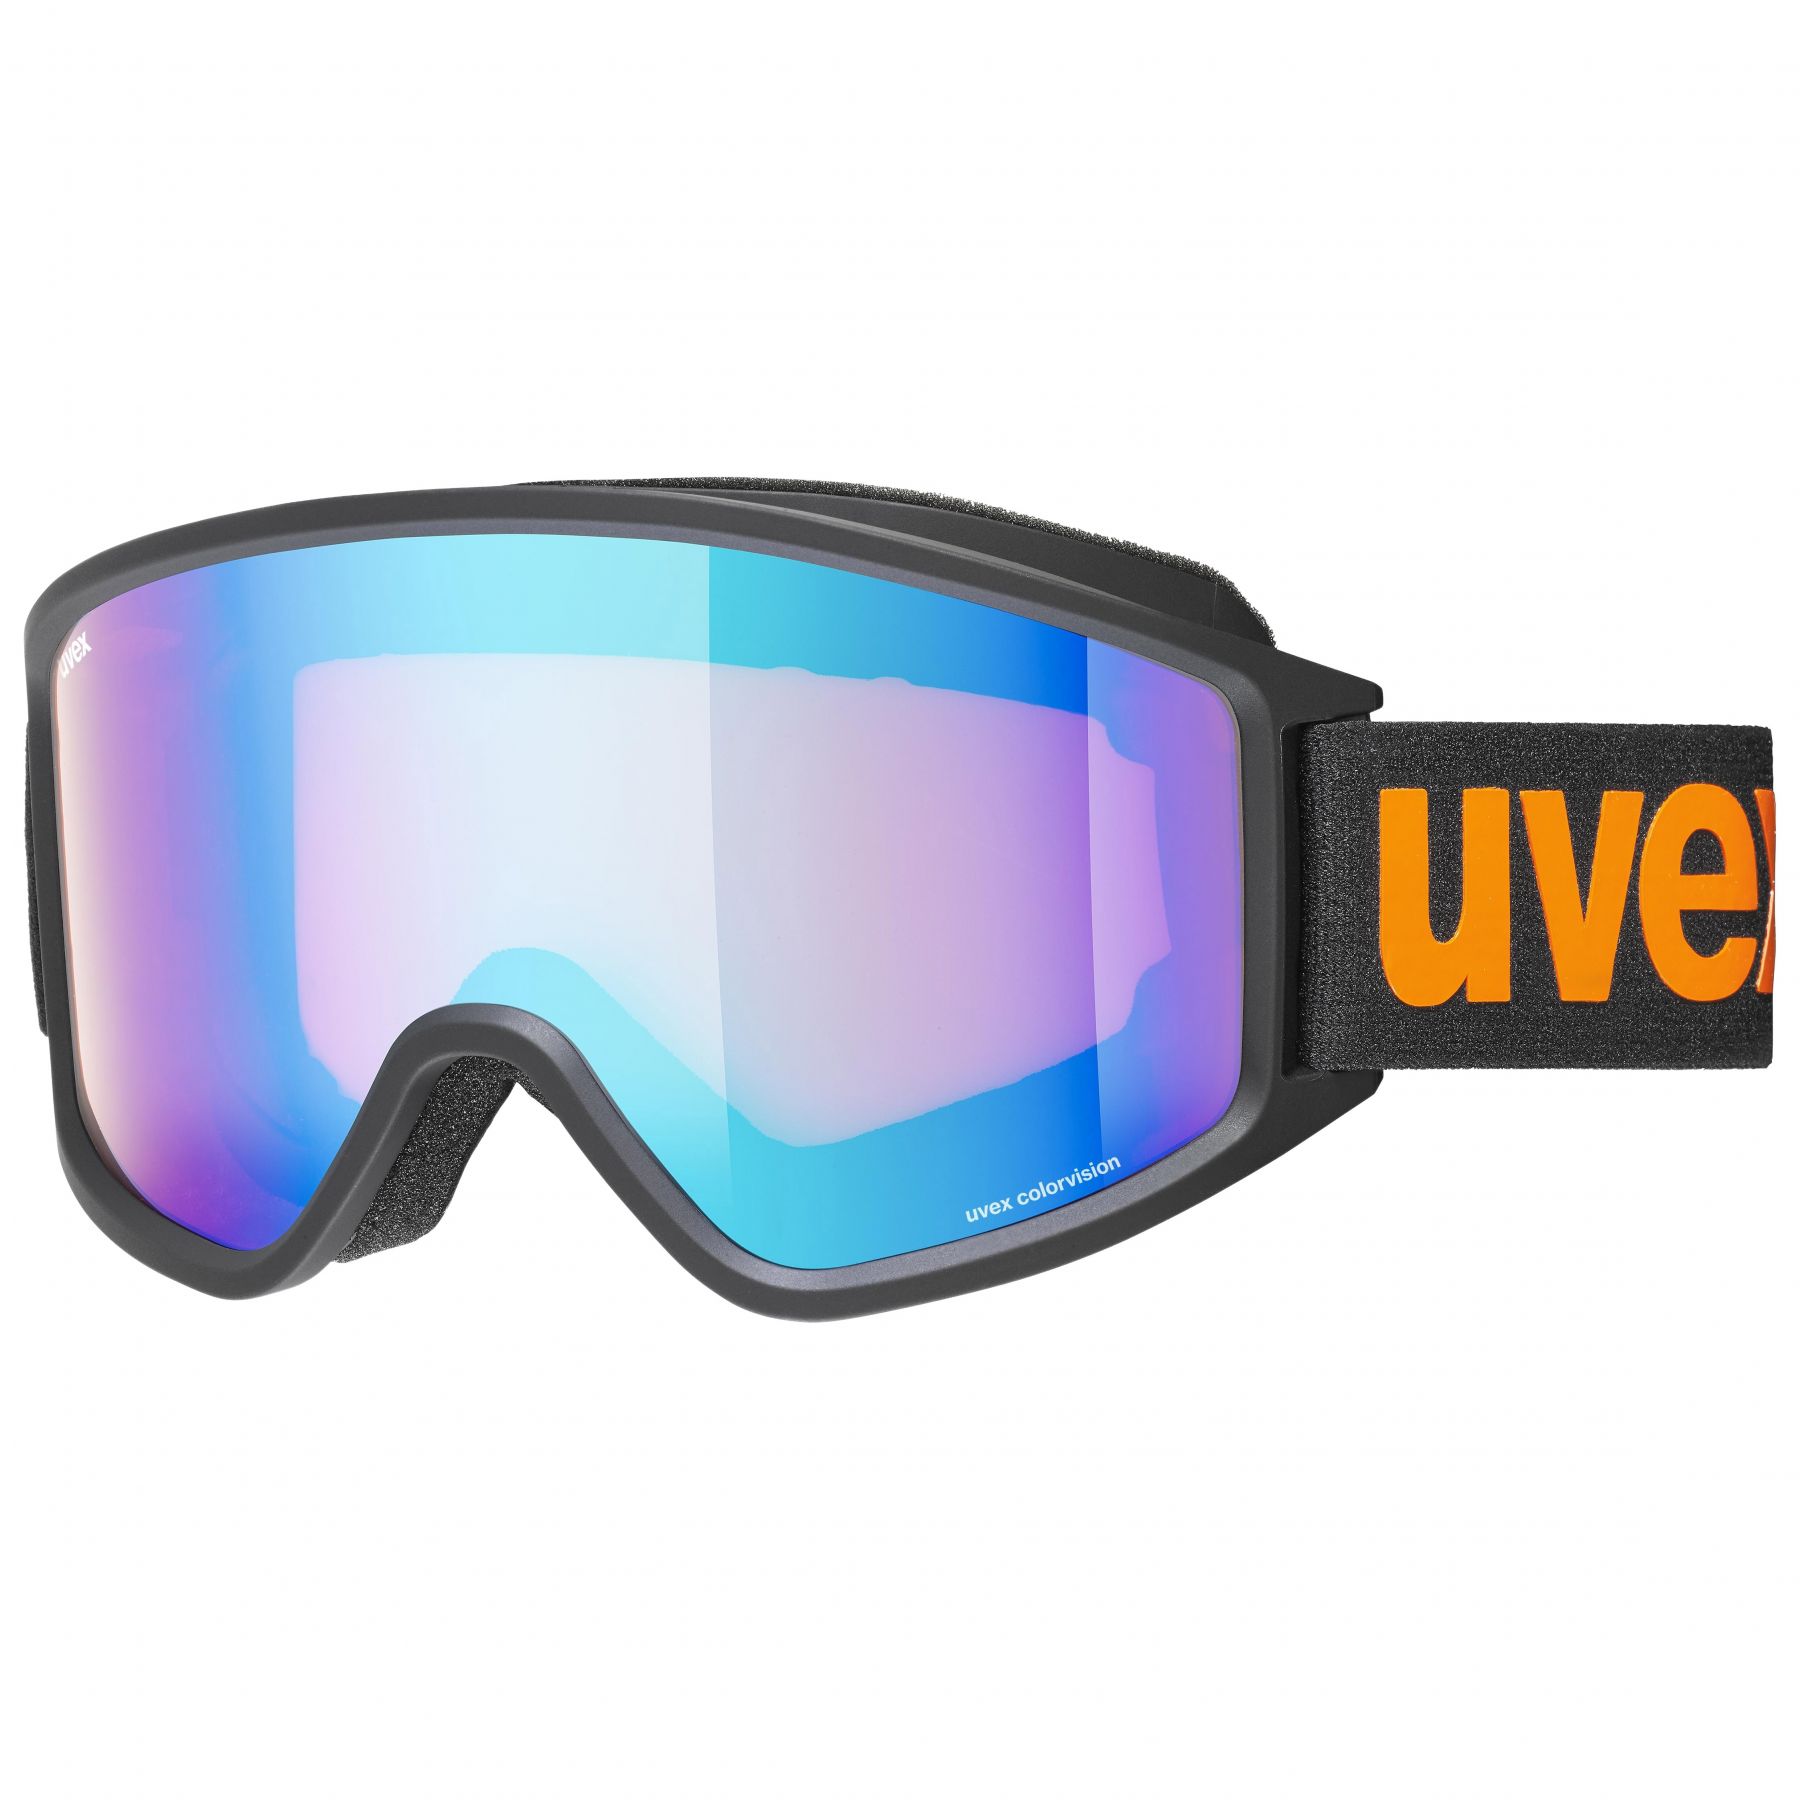 Billede af Uvex g.gl. 3000 CV, skibriller, sort/orange hos Skisport.dk